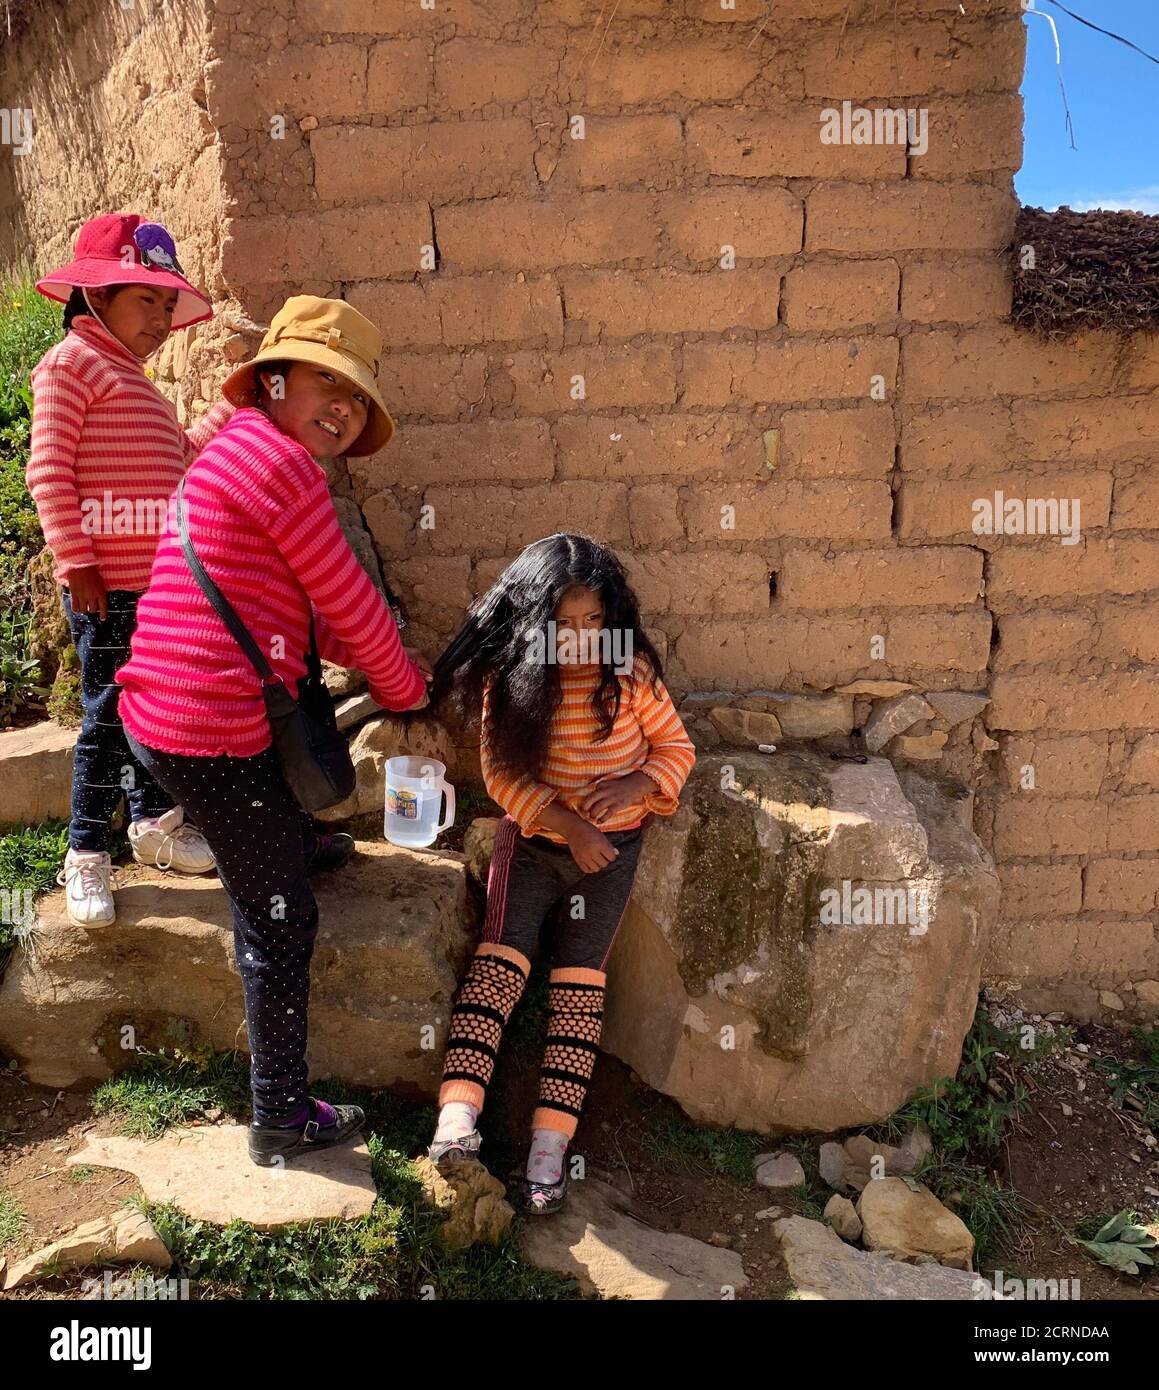 Le ragazze carine boliviane si fanno a vicenda acconciature con trecce. Divertenti adorabili bambini Aymara provenienti da Isla del Sol, Boliiva, Sud America. Amico di infanzia Foto Stock